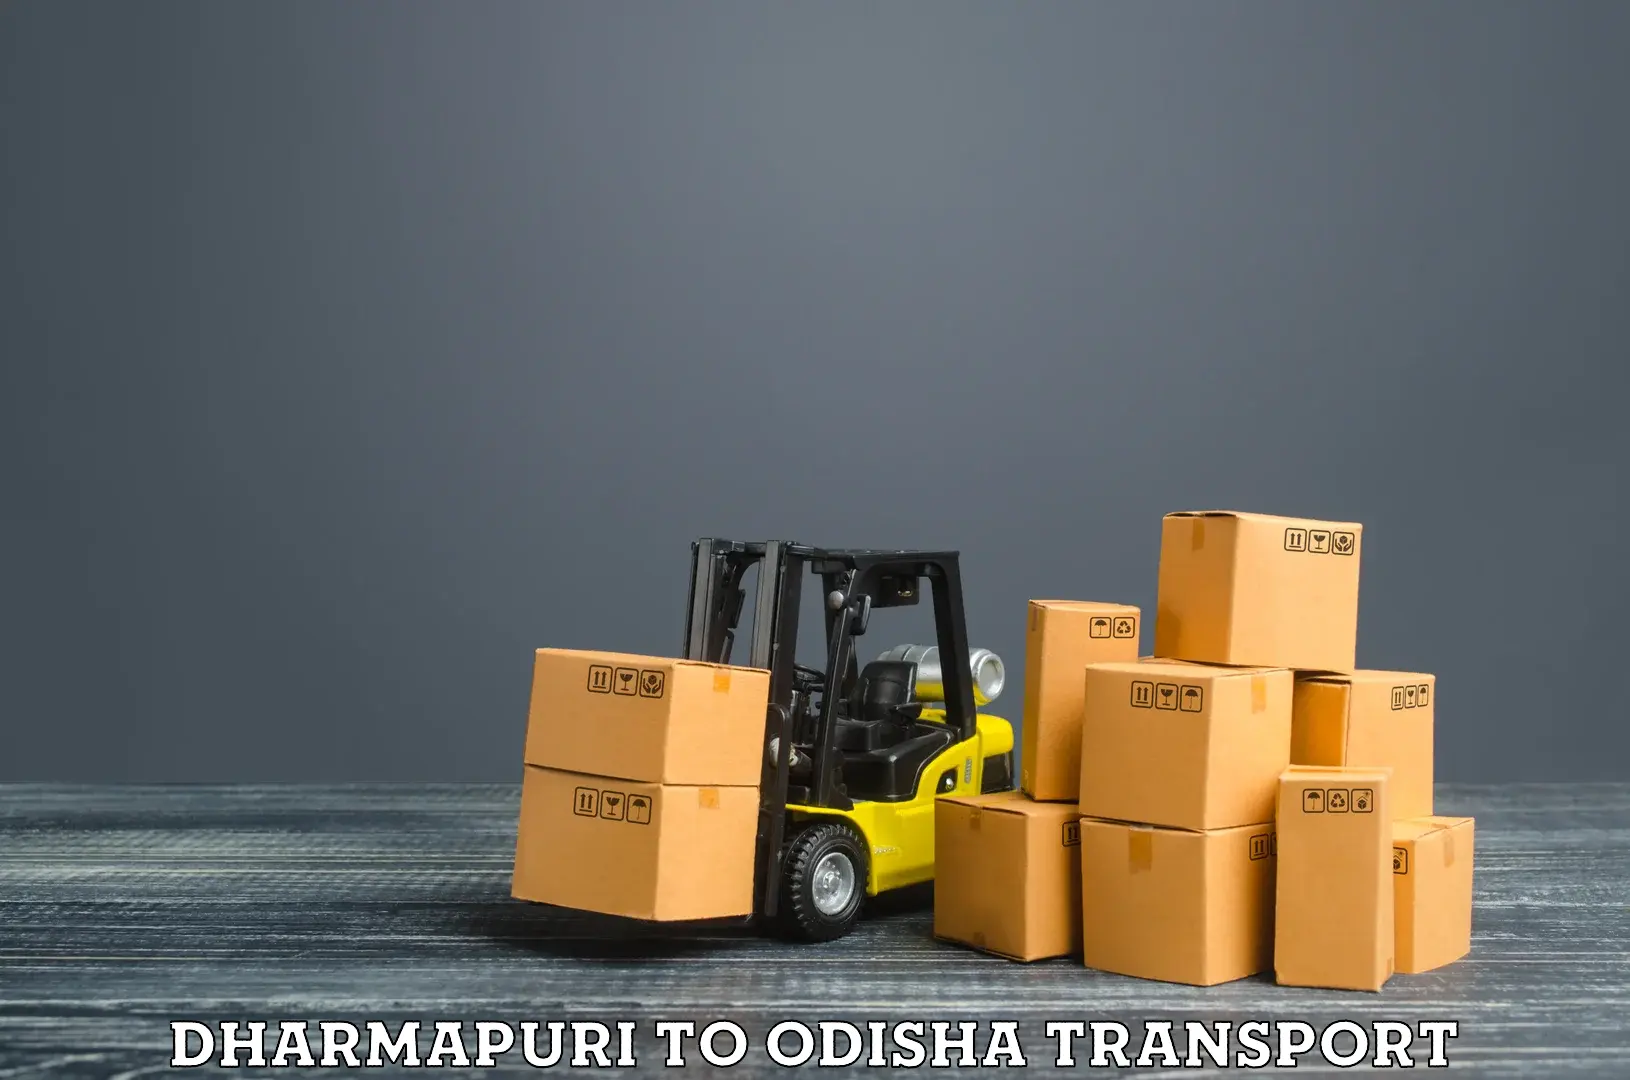 Cargo transportation services Dharmapuri to Pottangi